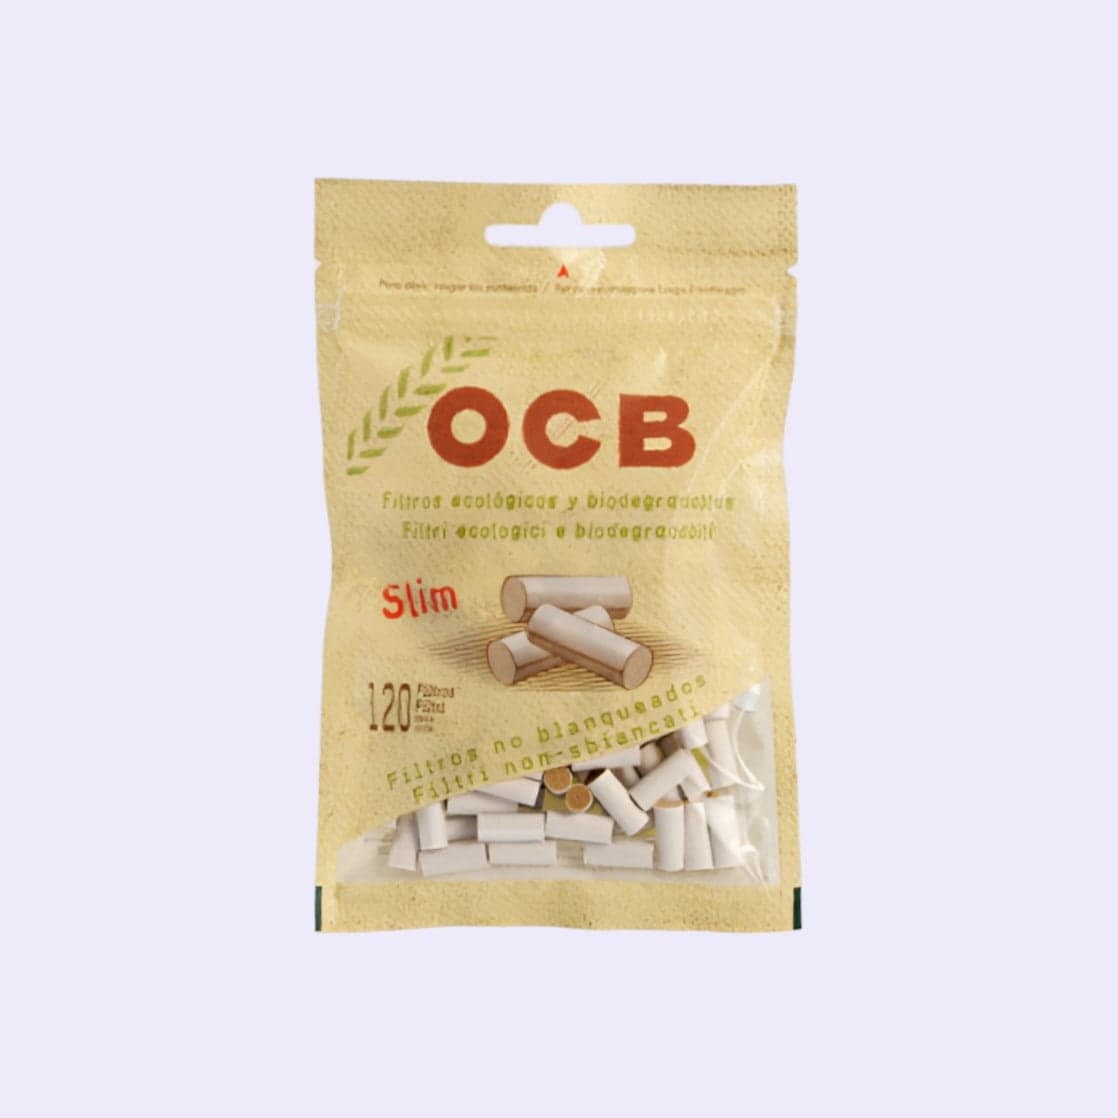 Dieses Bild zeigt die OCB Organic Bio Filter 6mm Slim